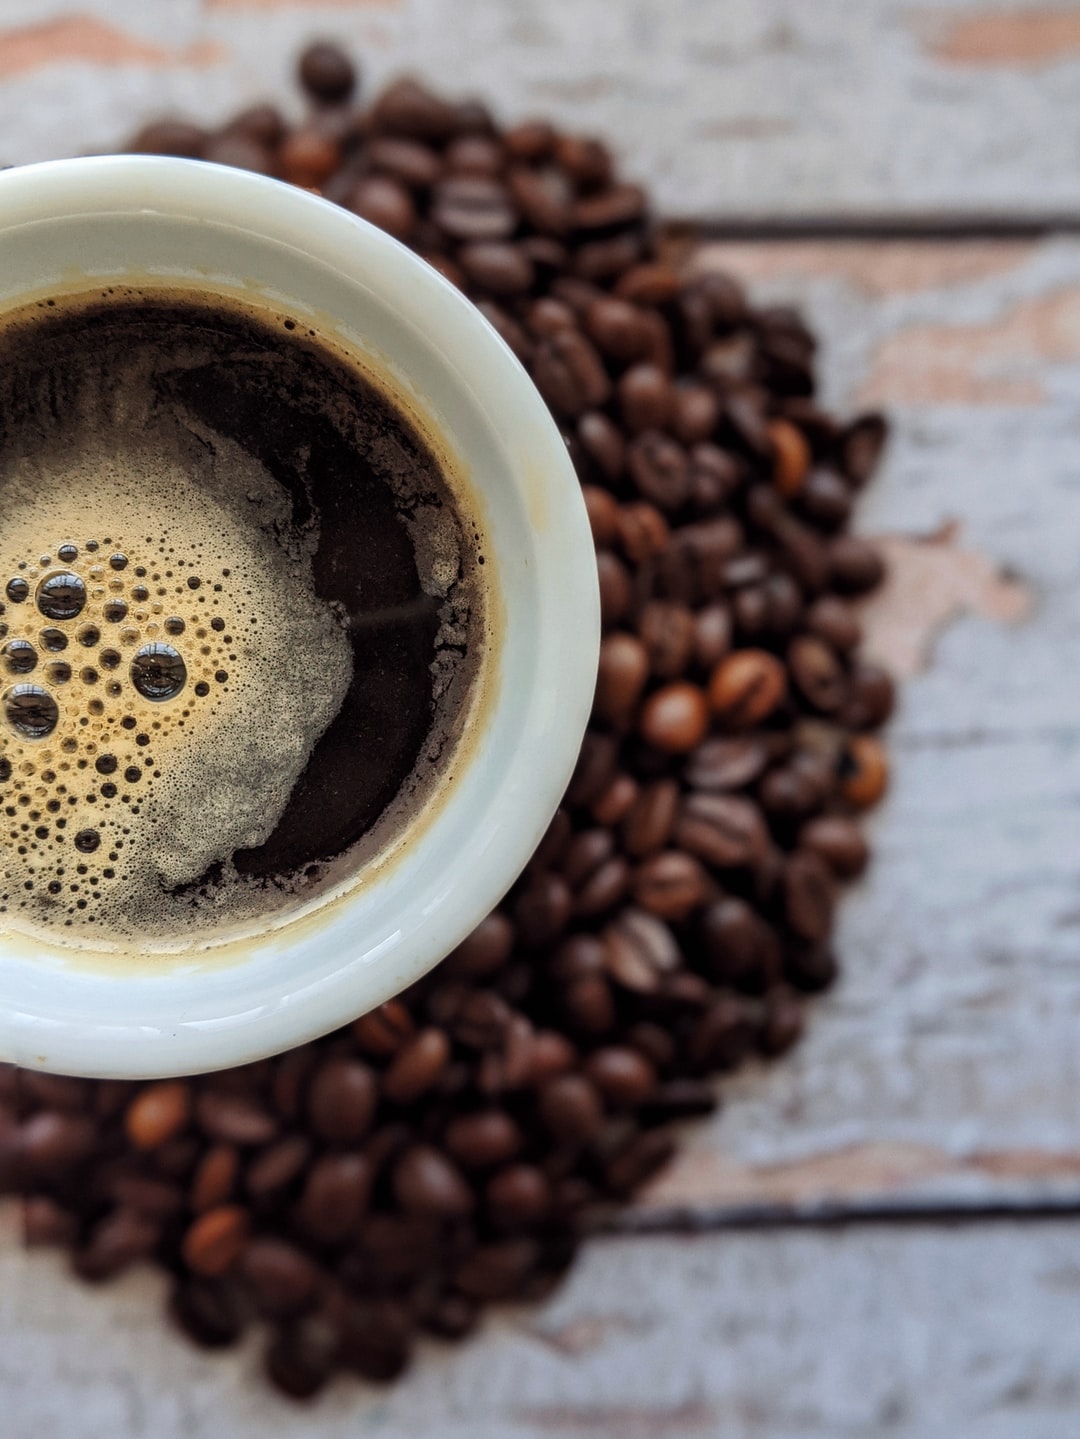 Top 5 Best Espresso Beans of 2020 - Espresso Coffee Brand Reviews